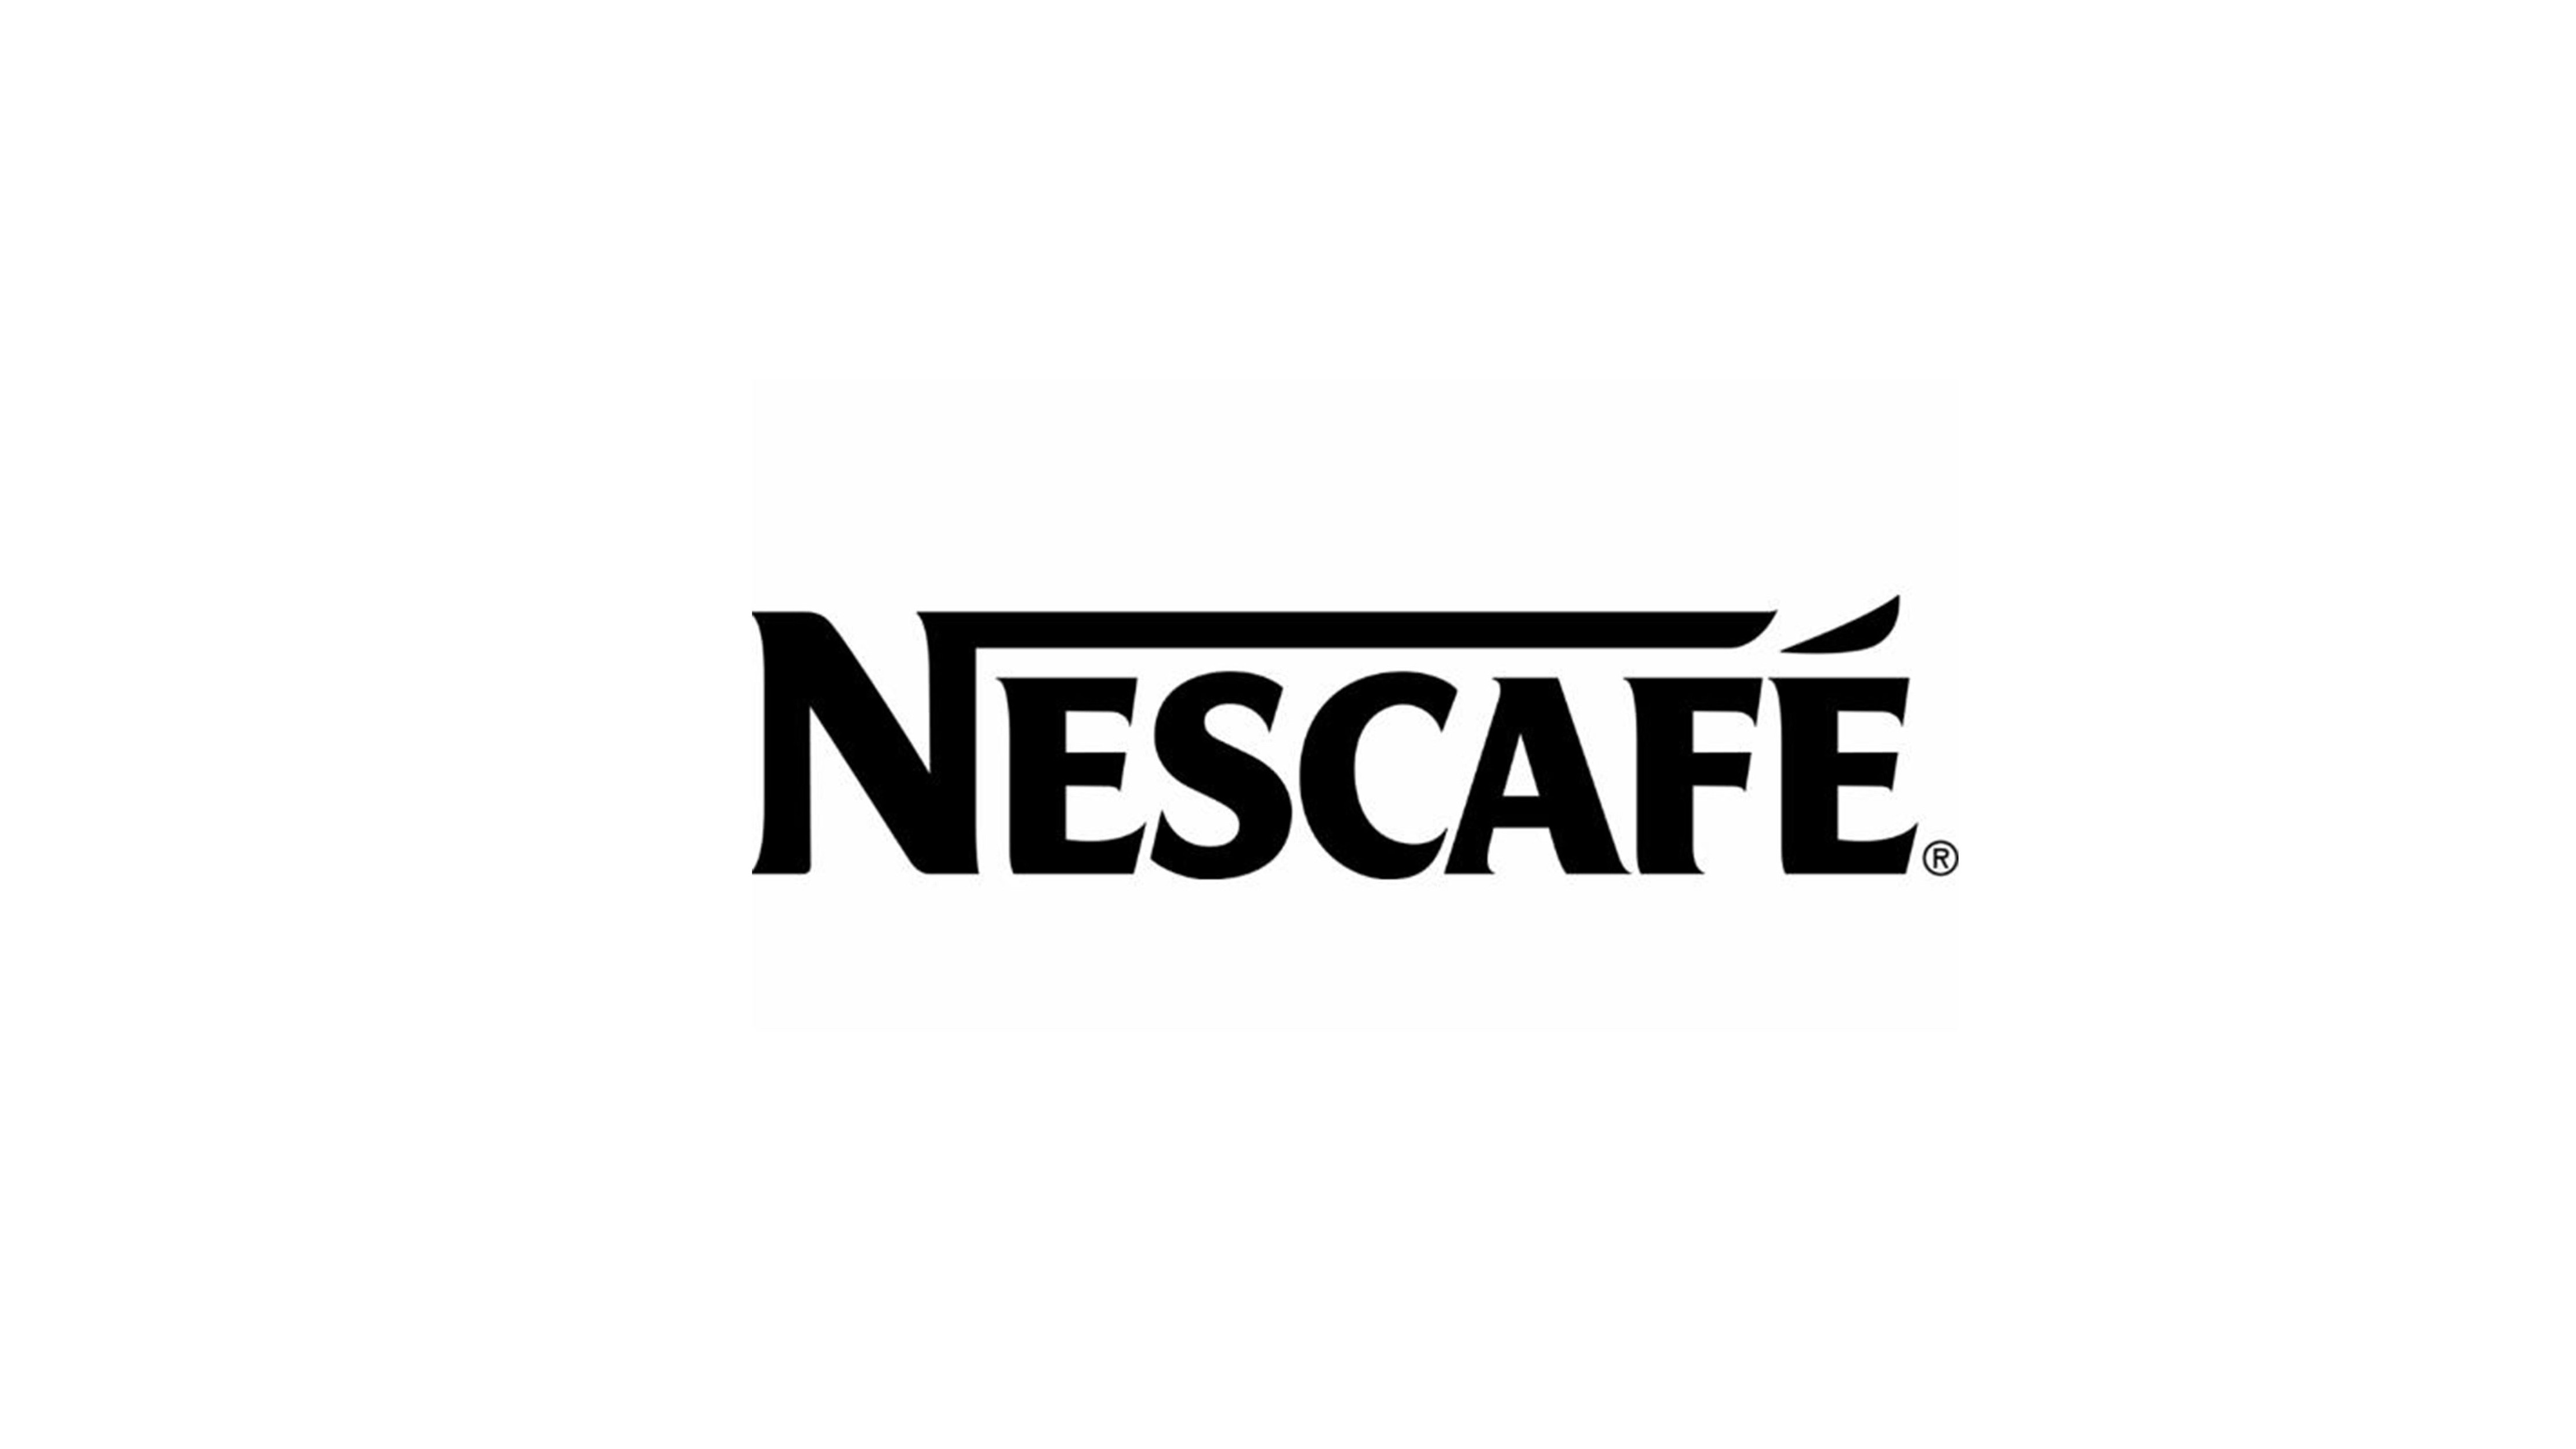 雀巢咖啡logo图片含义/演变/变迁及品牌介绍 - logo